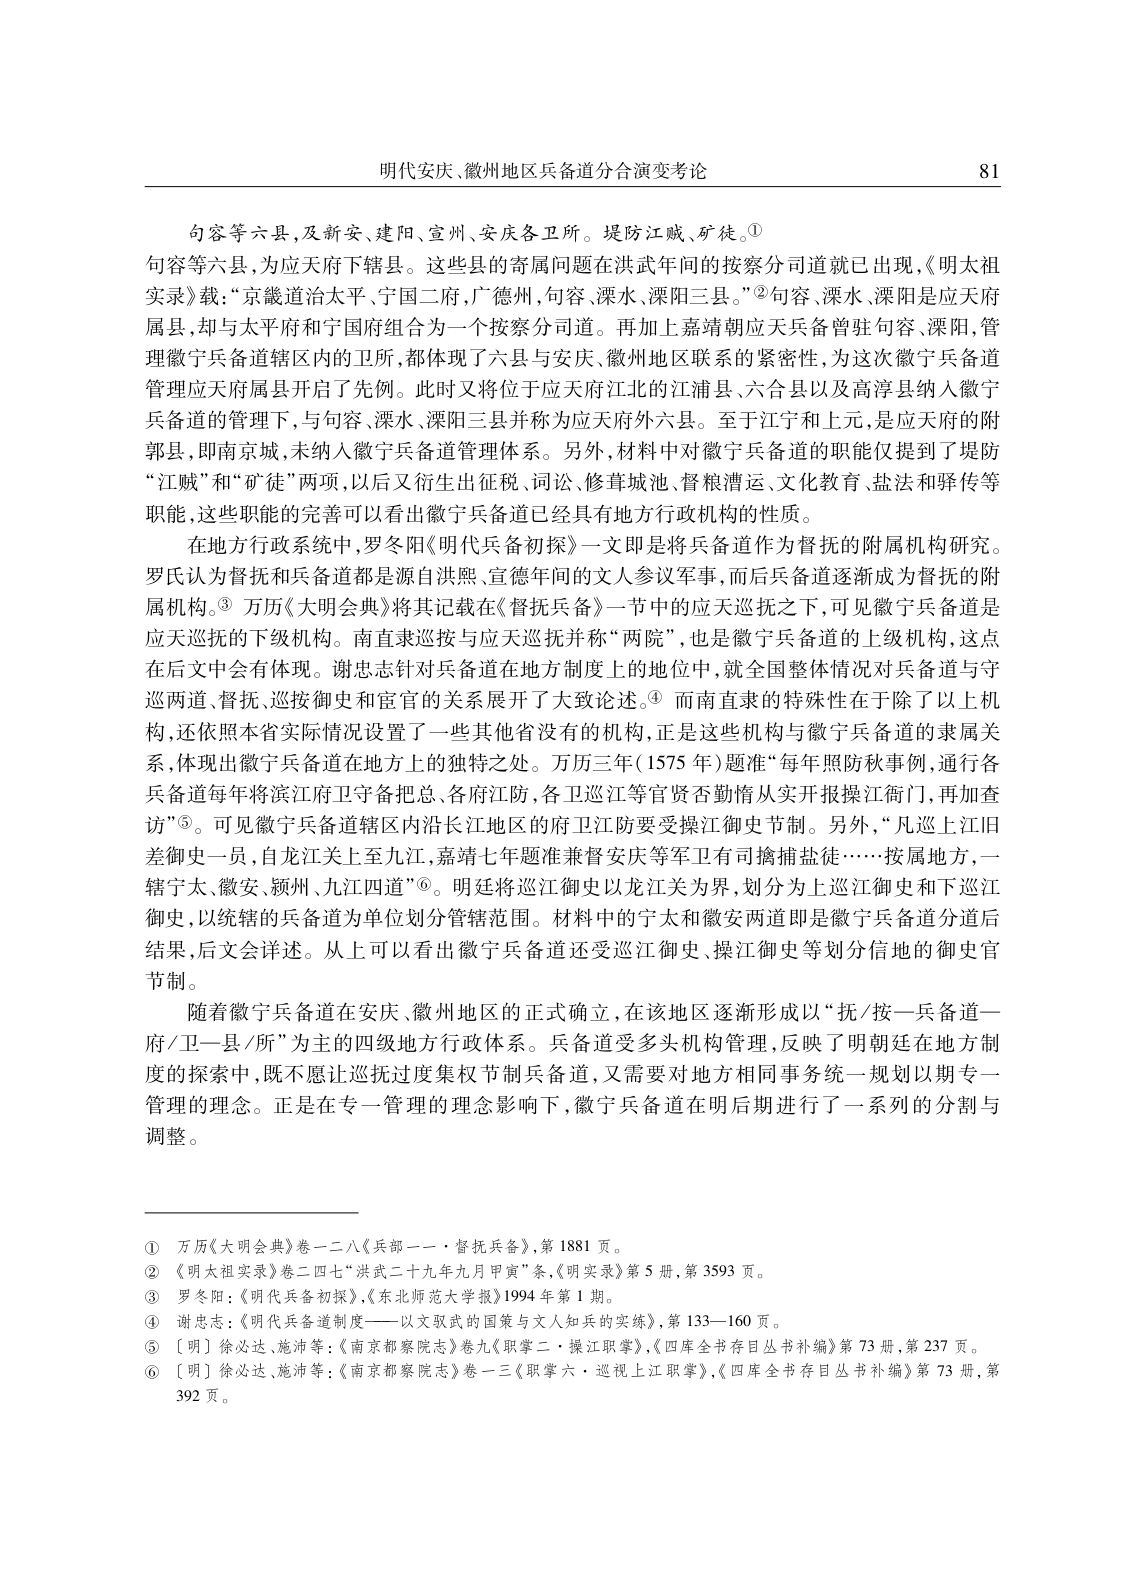 明代安庆、徽州地区兵备道分合演变考论_page-0010.jpg